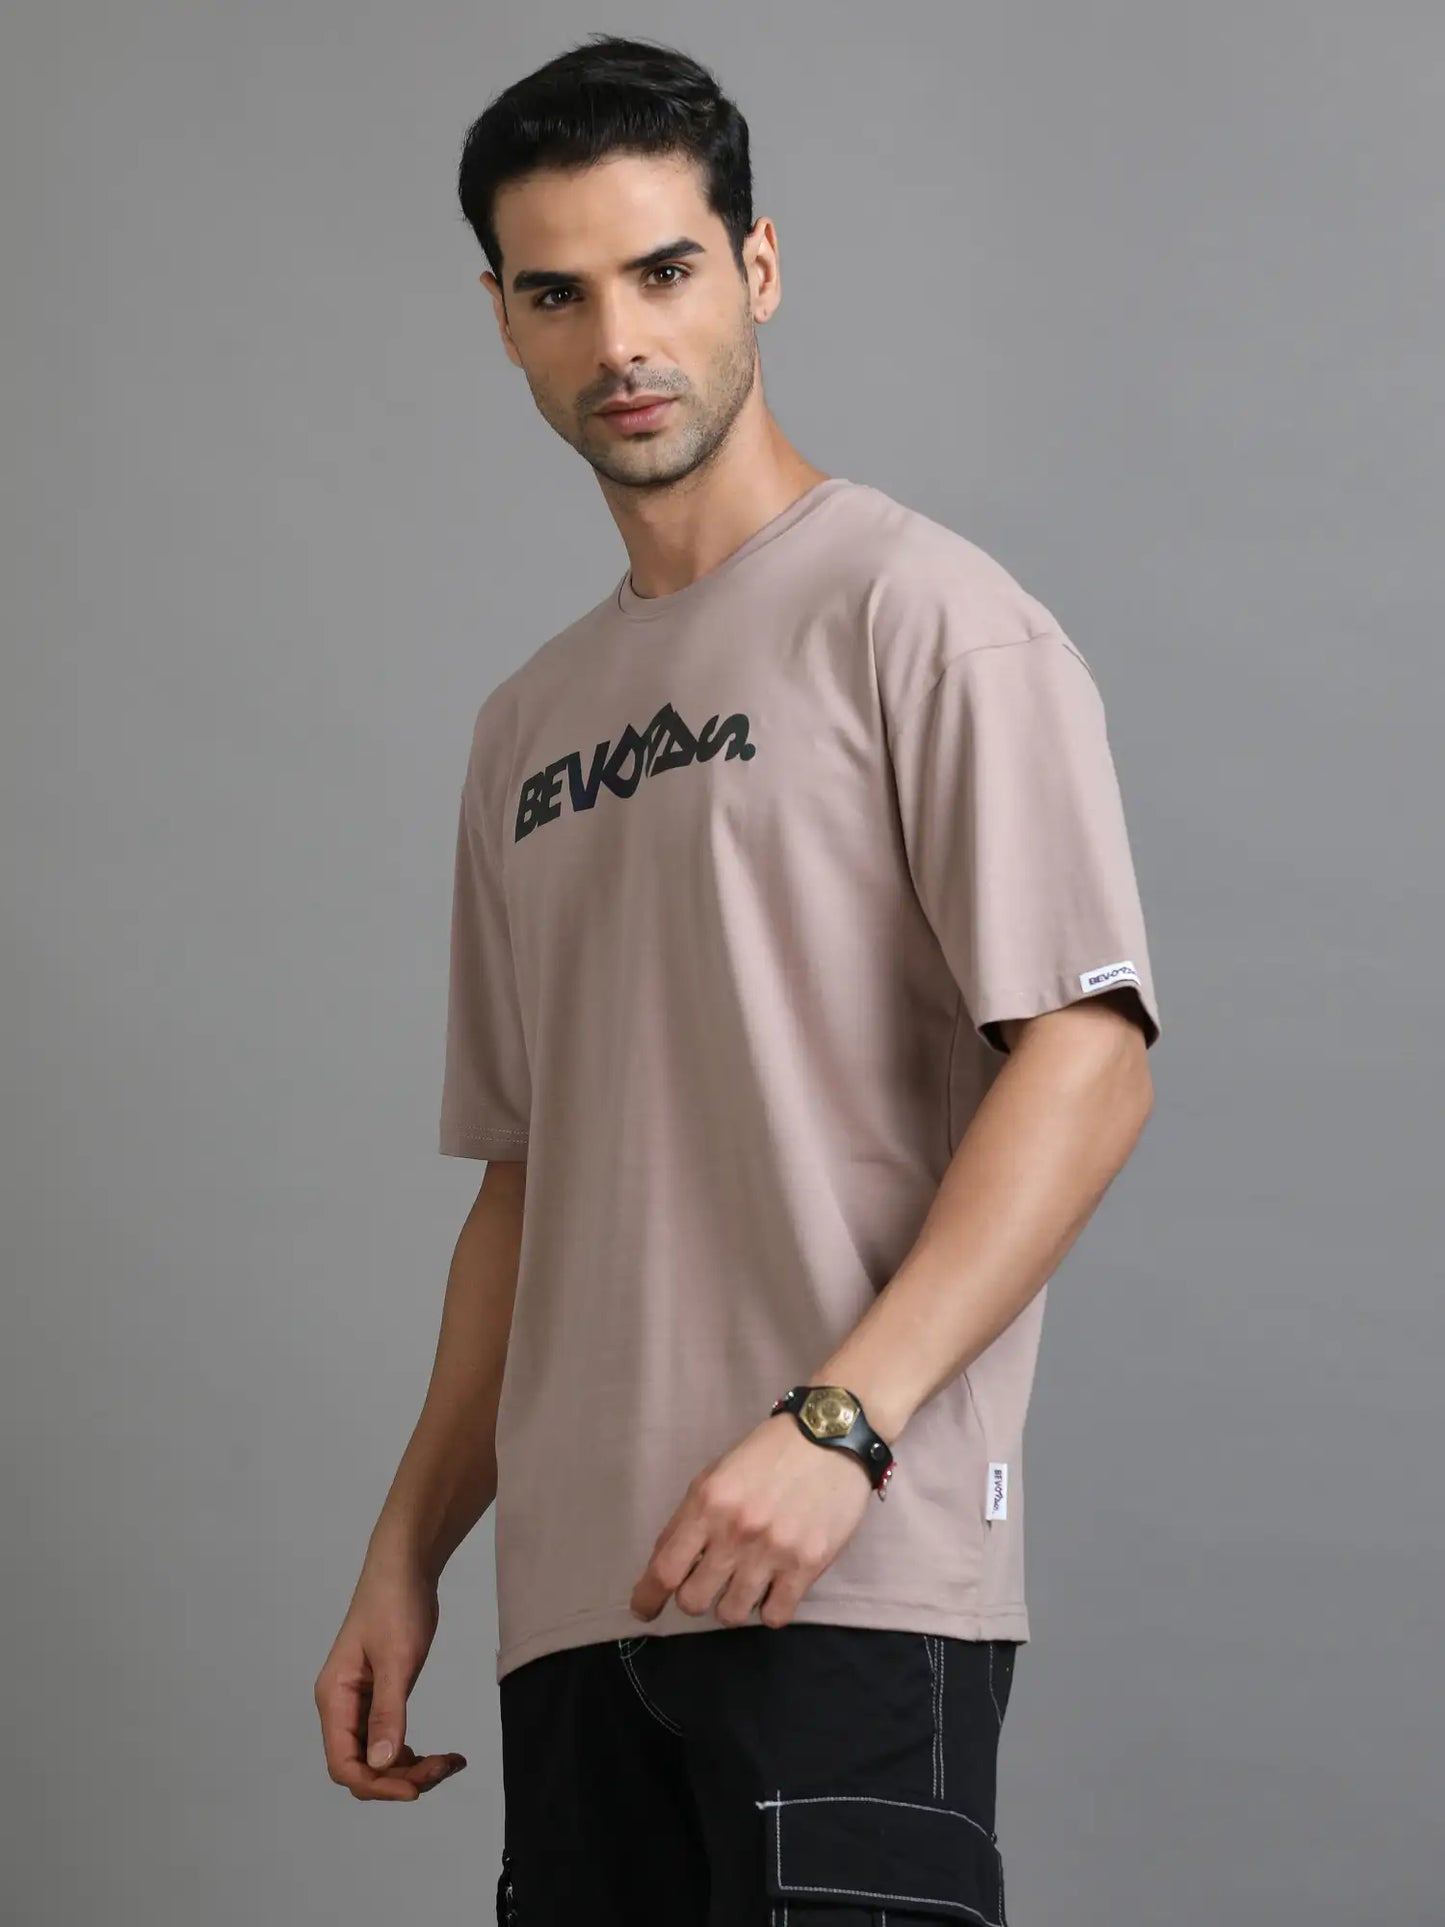 Brown Drop Shoulder T Shirt for Men